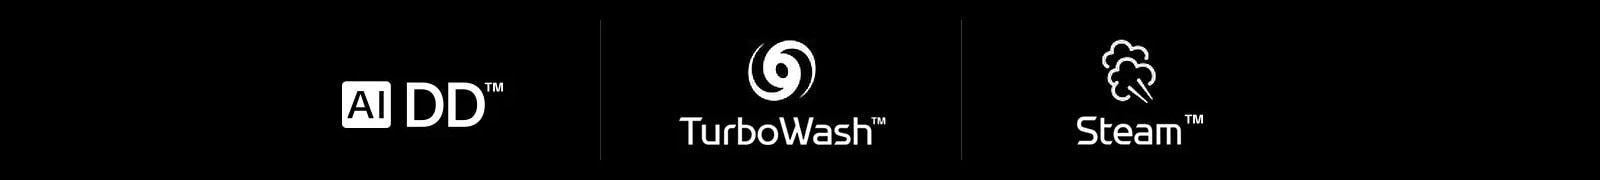 lg aidd turboWash Steam washing machine